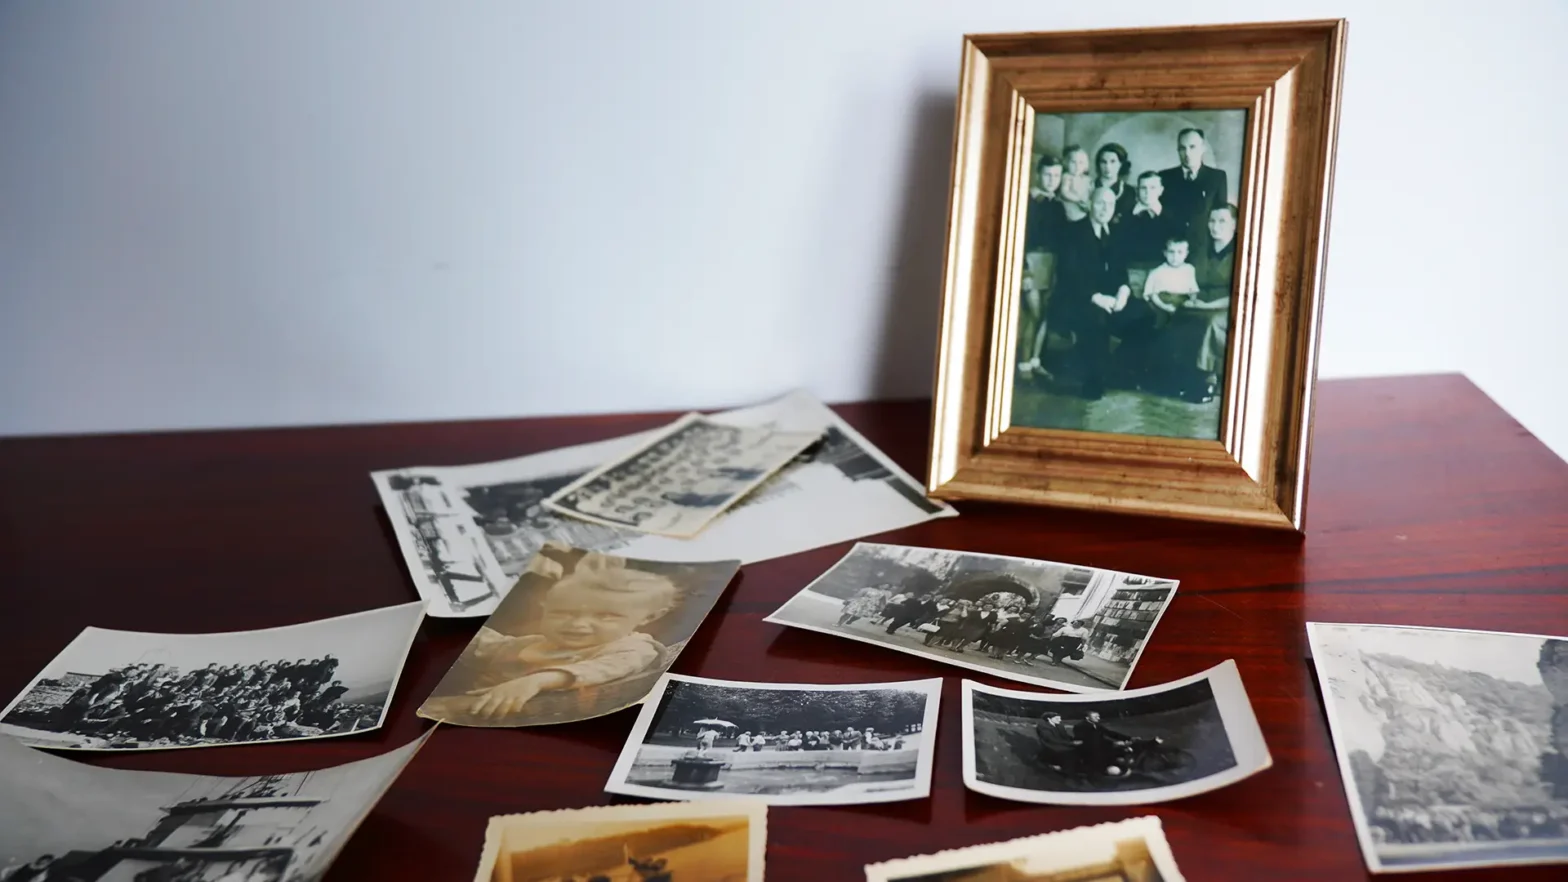 W głównym kadrze znajduje czarnobiałe zdjęcie rodziny w złotej ramce. Wkoło porozrzucane są różne stare zdjęcia rodzinne.